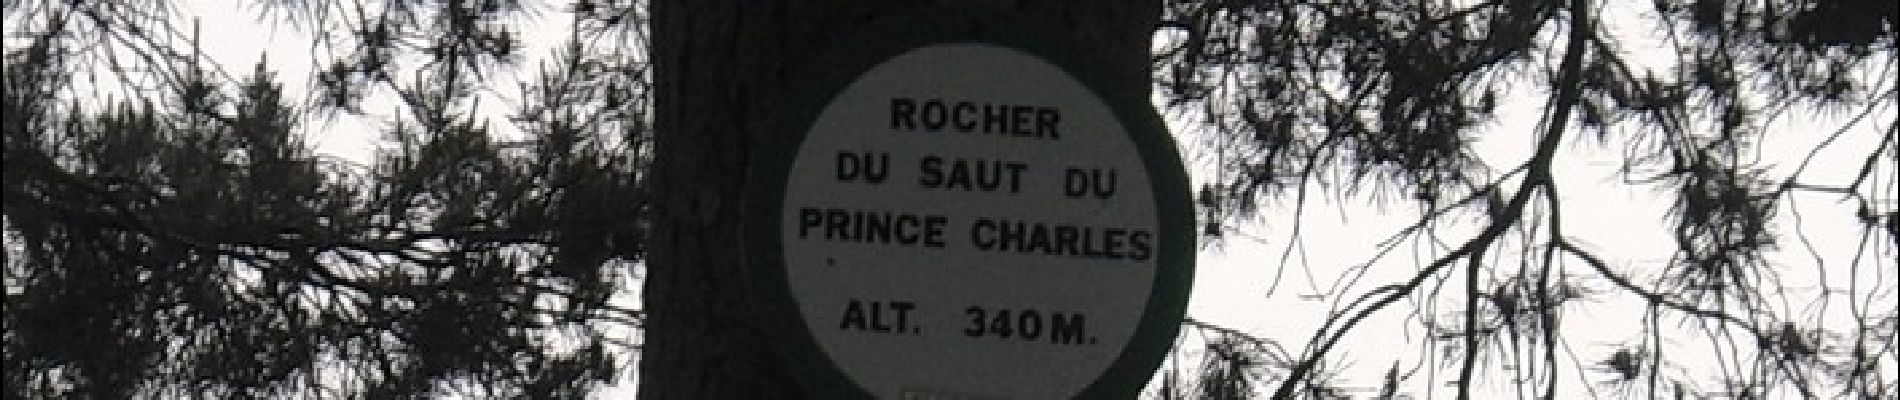 Randonnée Marche Saverne - Circulaire du Saut du Prince Charles - Photo